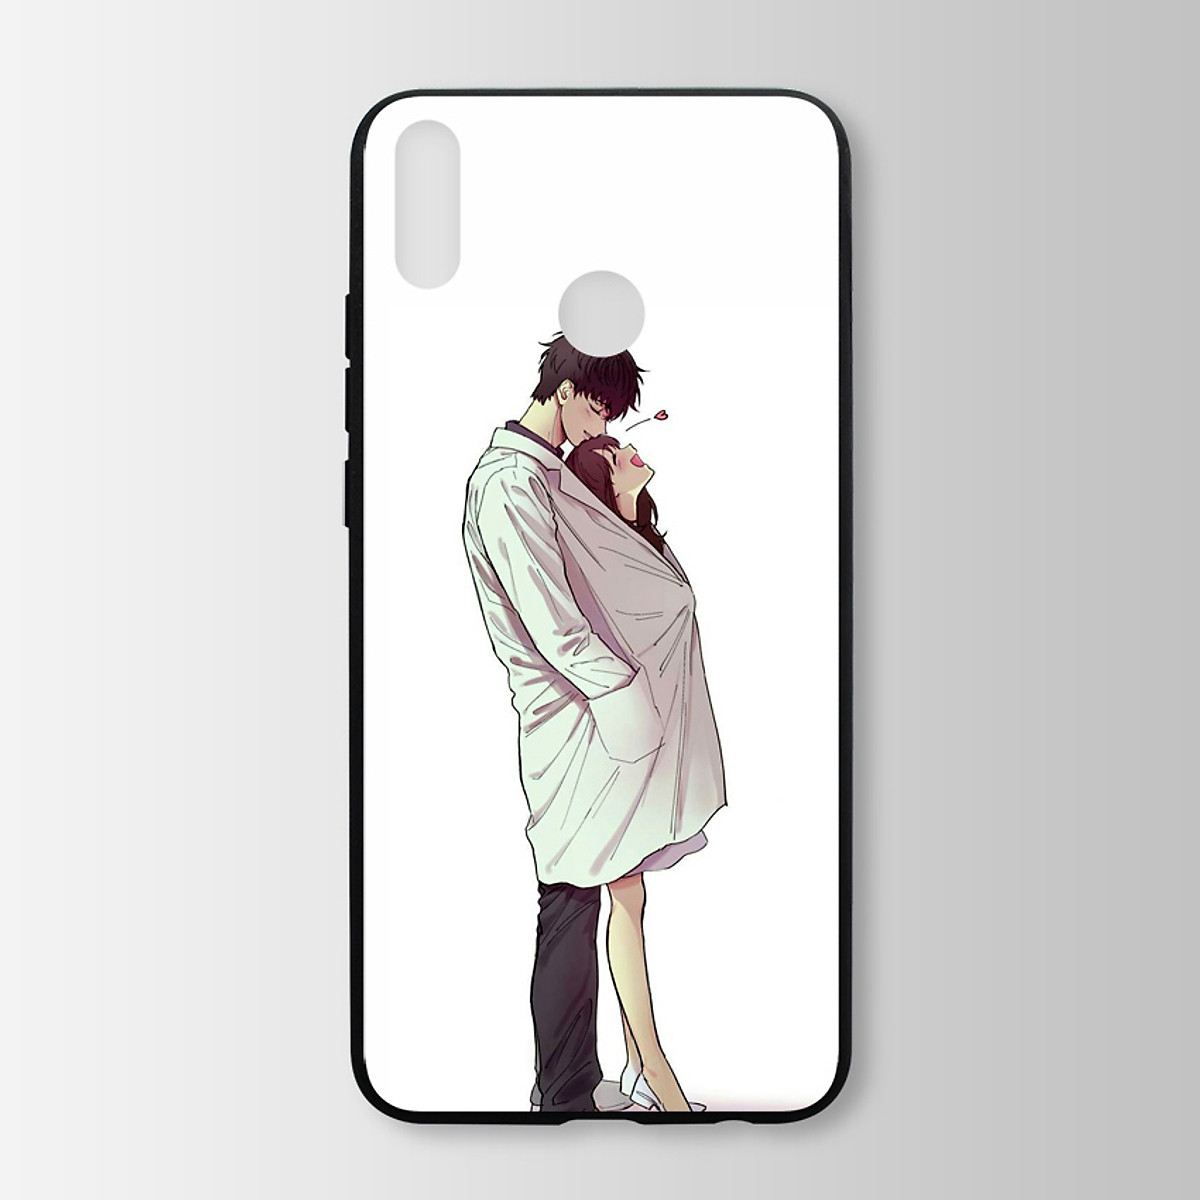 Bộ ảnh của cặp đôi sử dụng Ốp lưng kính cường lực cho Huawei Honor 8X là một sự lựa chọn thông minh giữa tính thẩm mỹ và tính năng an toàn cho chiếc điện thoại của họ. Hãy cùng xem bộ ảnh này để tìm hiểu thêm về sản phẩm này cùng những khoảnh khắc đáng yêu của cặp đôi.